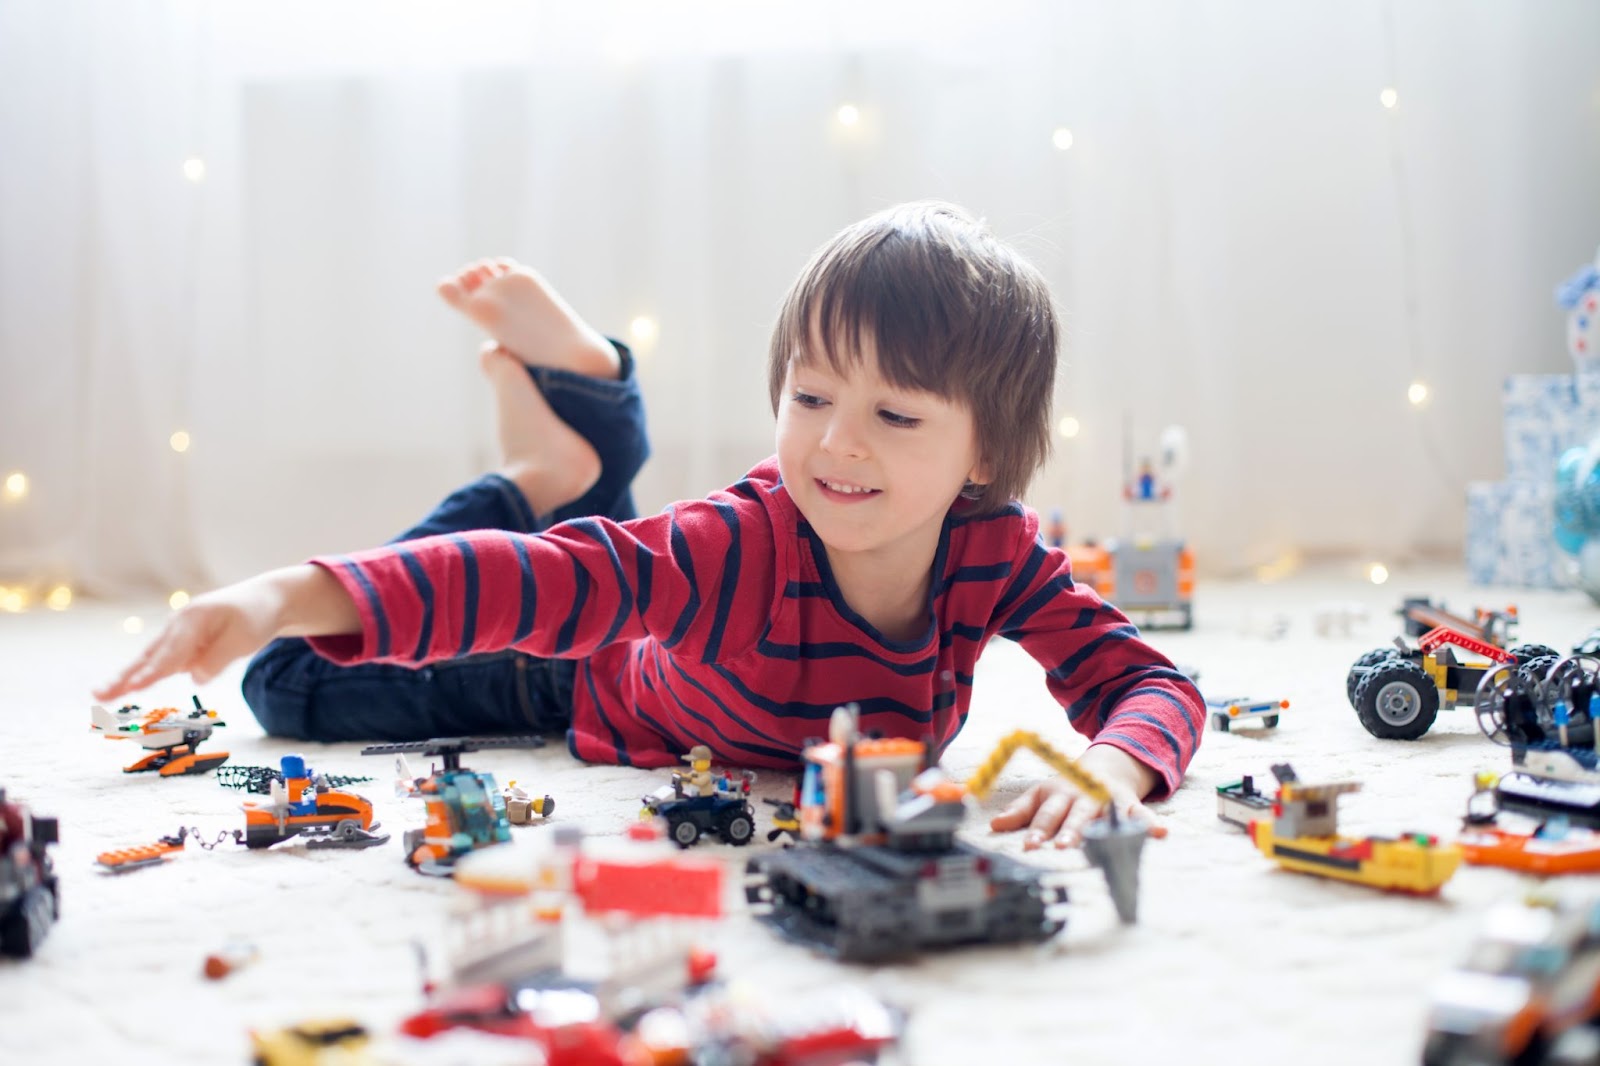 Băiețel se joacă pe podea cu piese lego colorate.